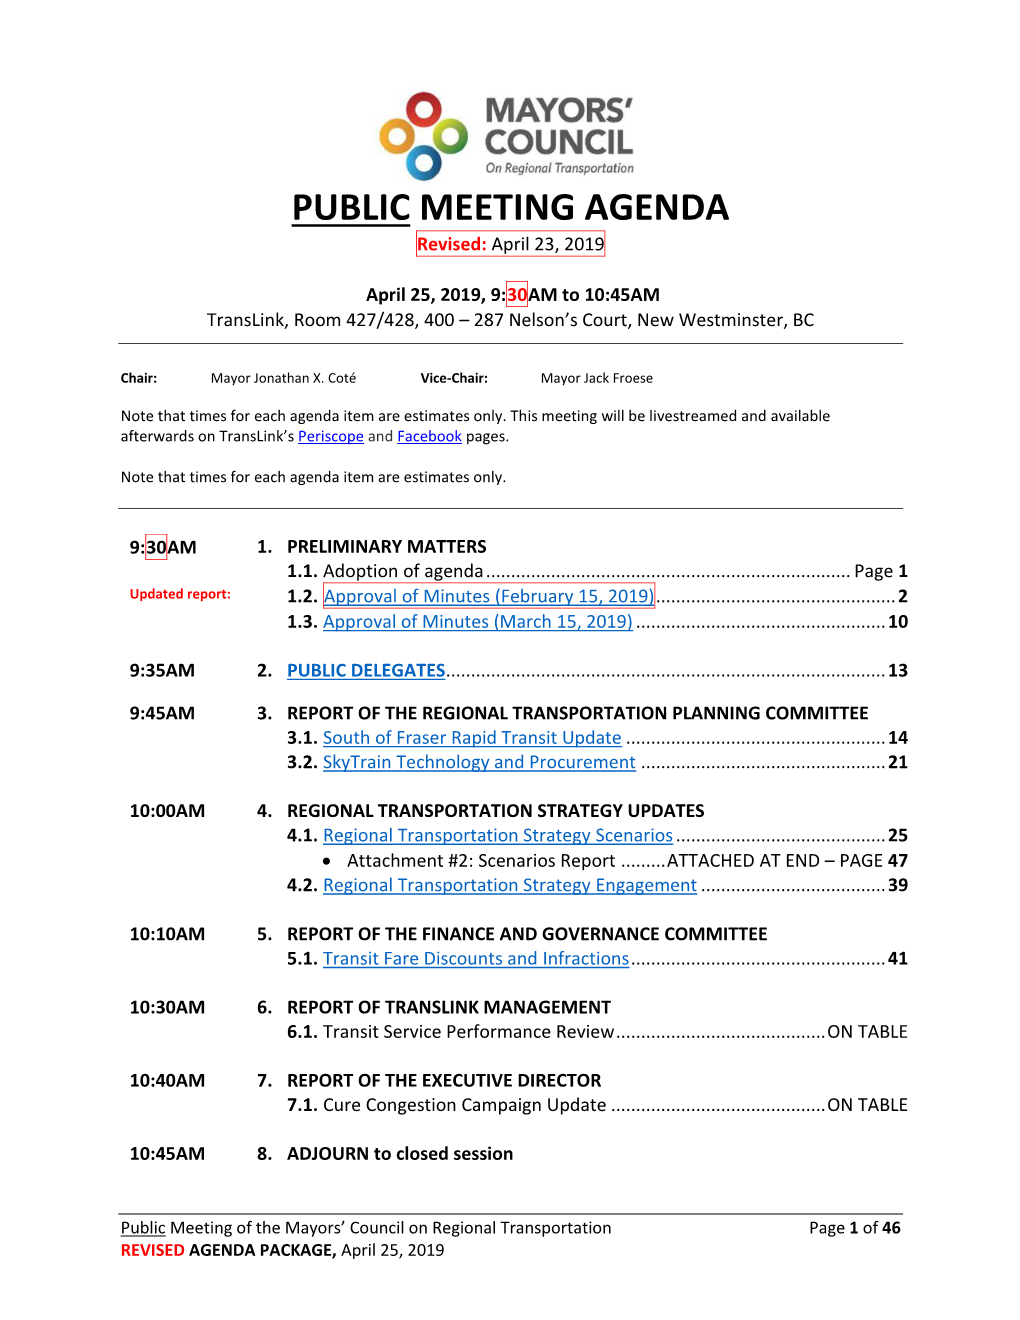 PUBLIC MEETING AGENDA Revised: April 23, 2019